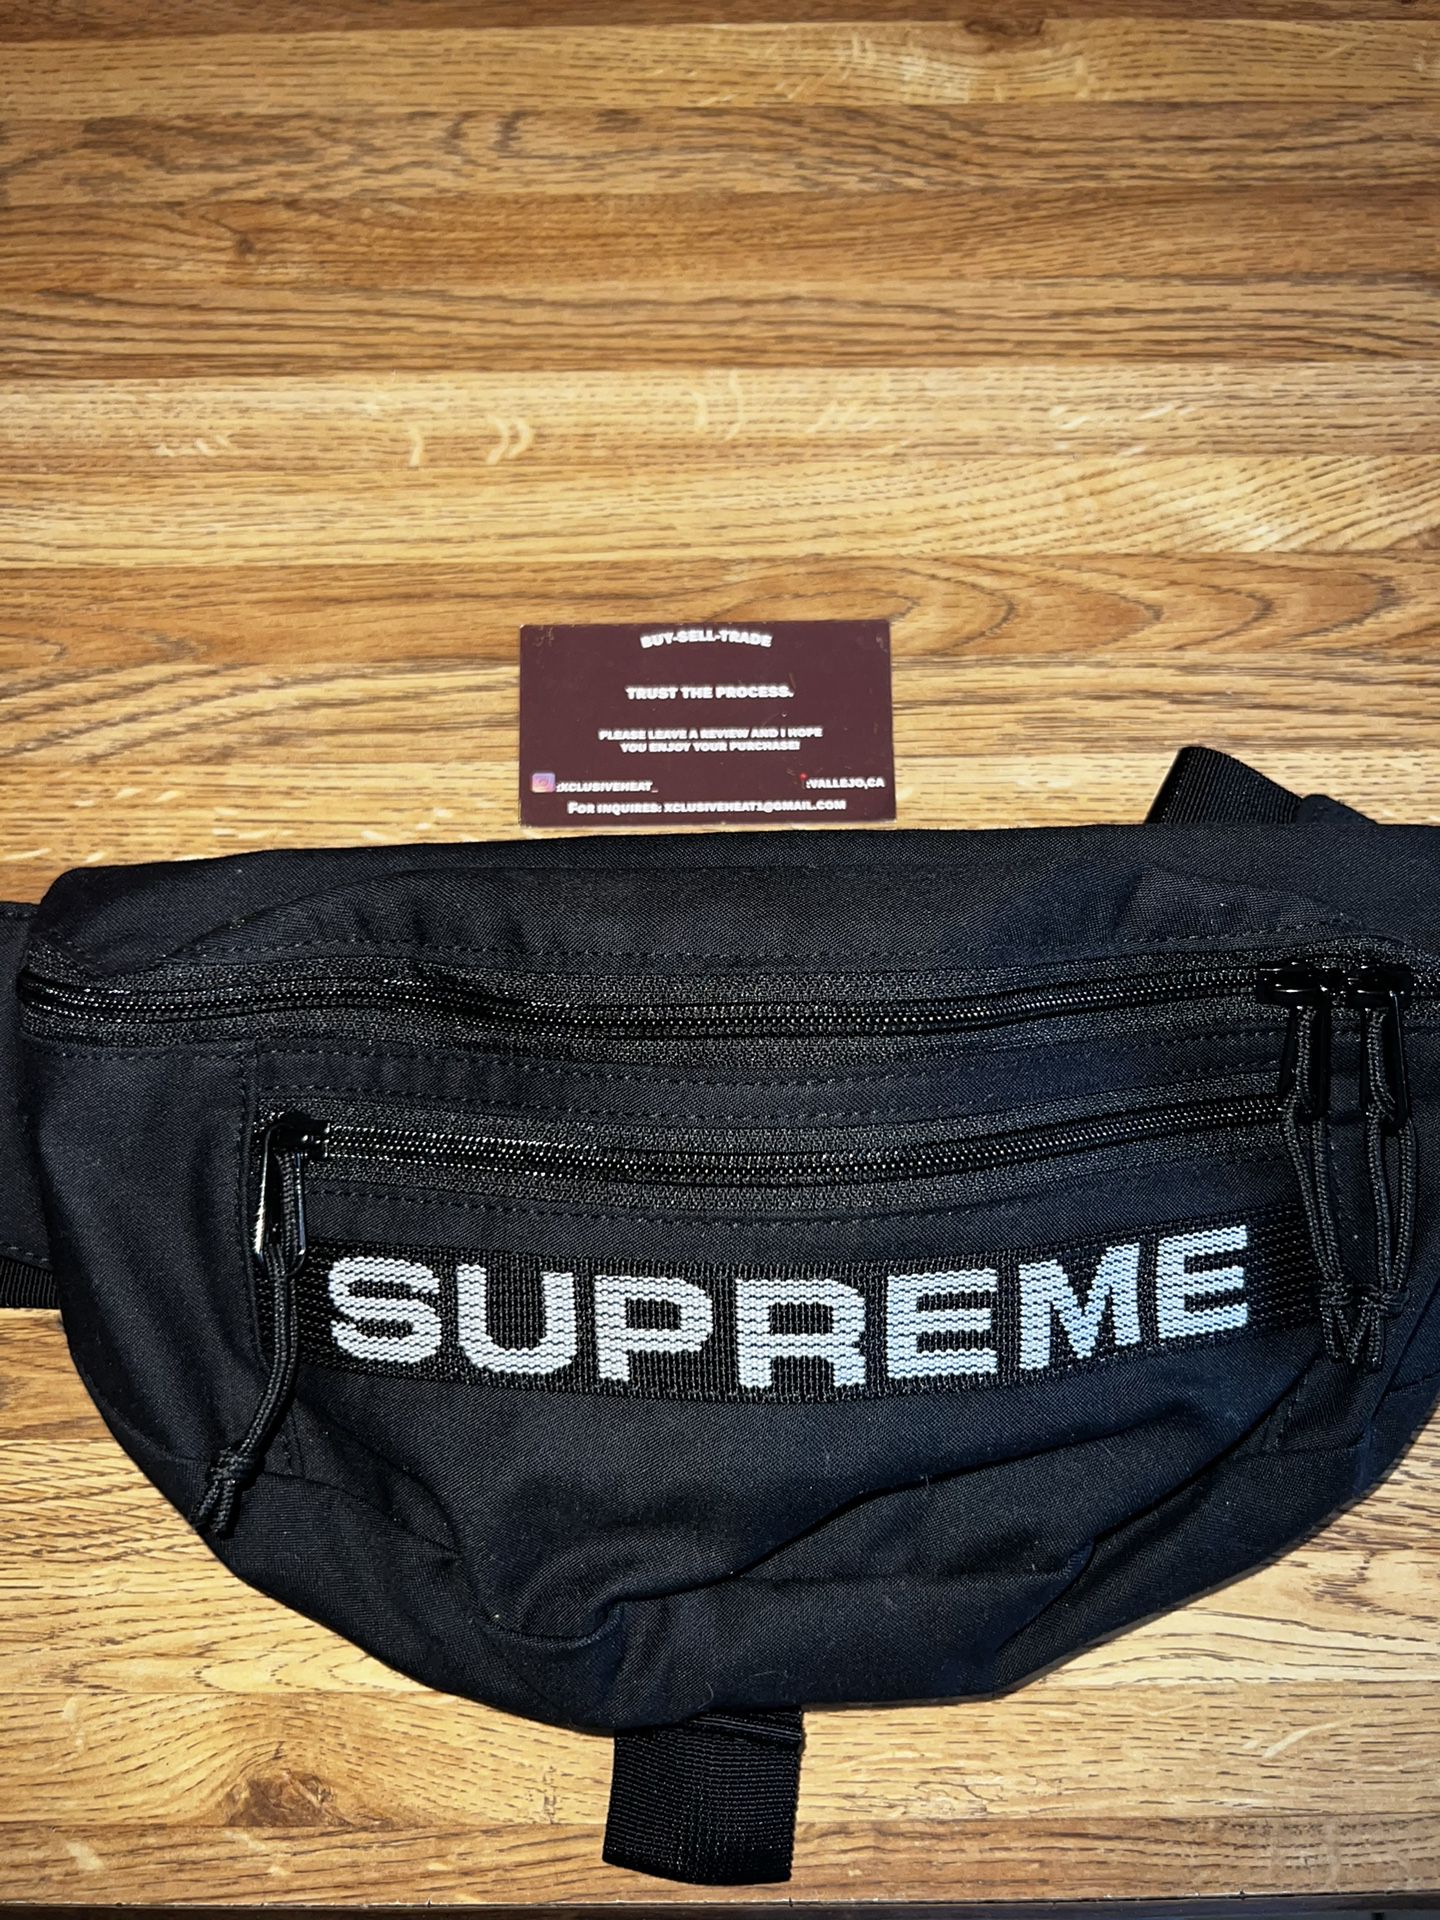 supreme waist bag ss23